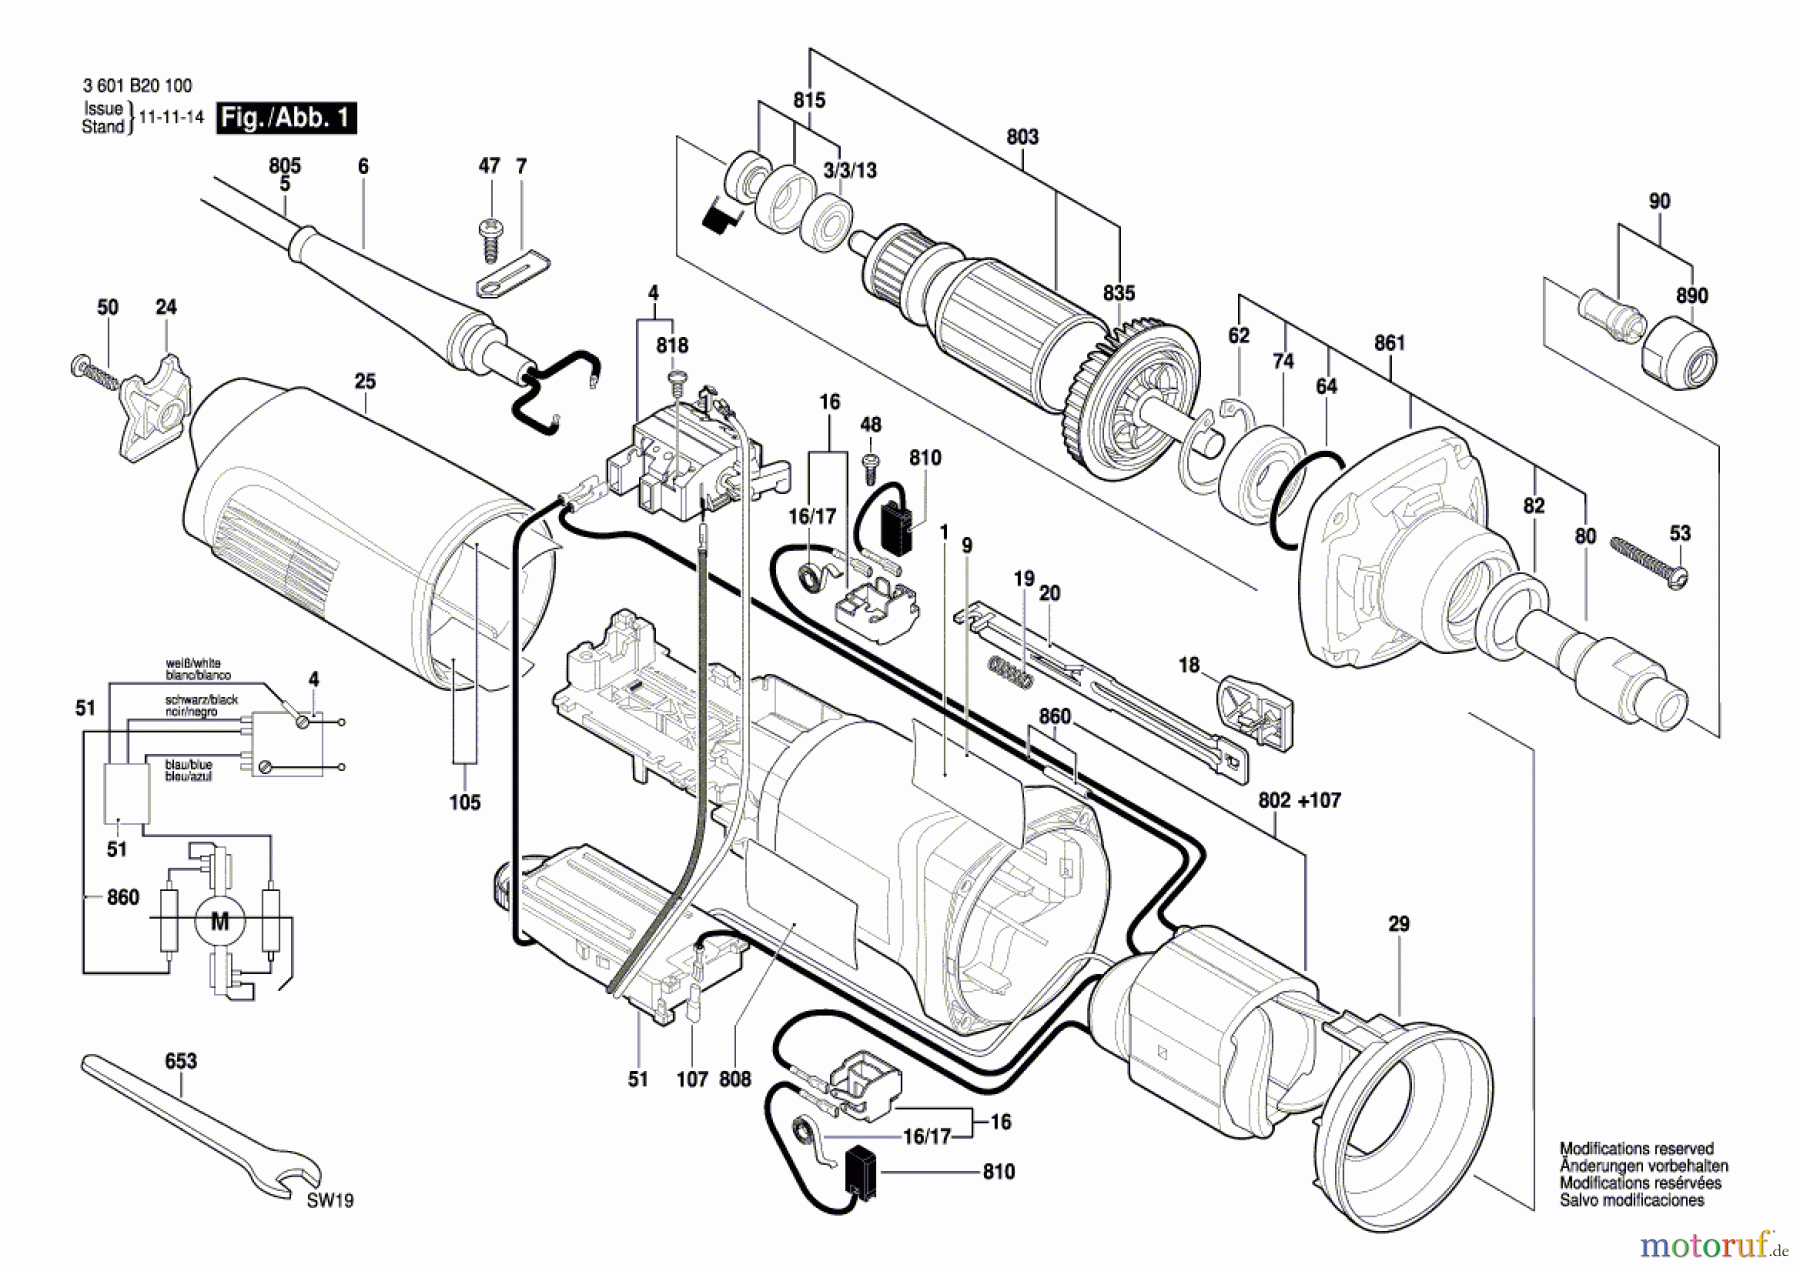  Bosch Werkzeug Hf-Geradschleifer GERADSCHLEIFER GGS 28 CE Seite 1